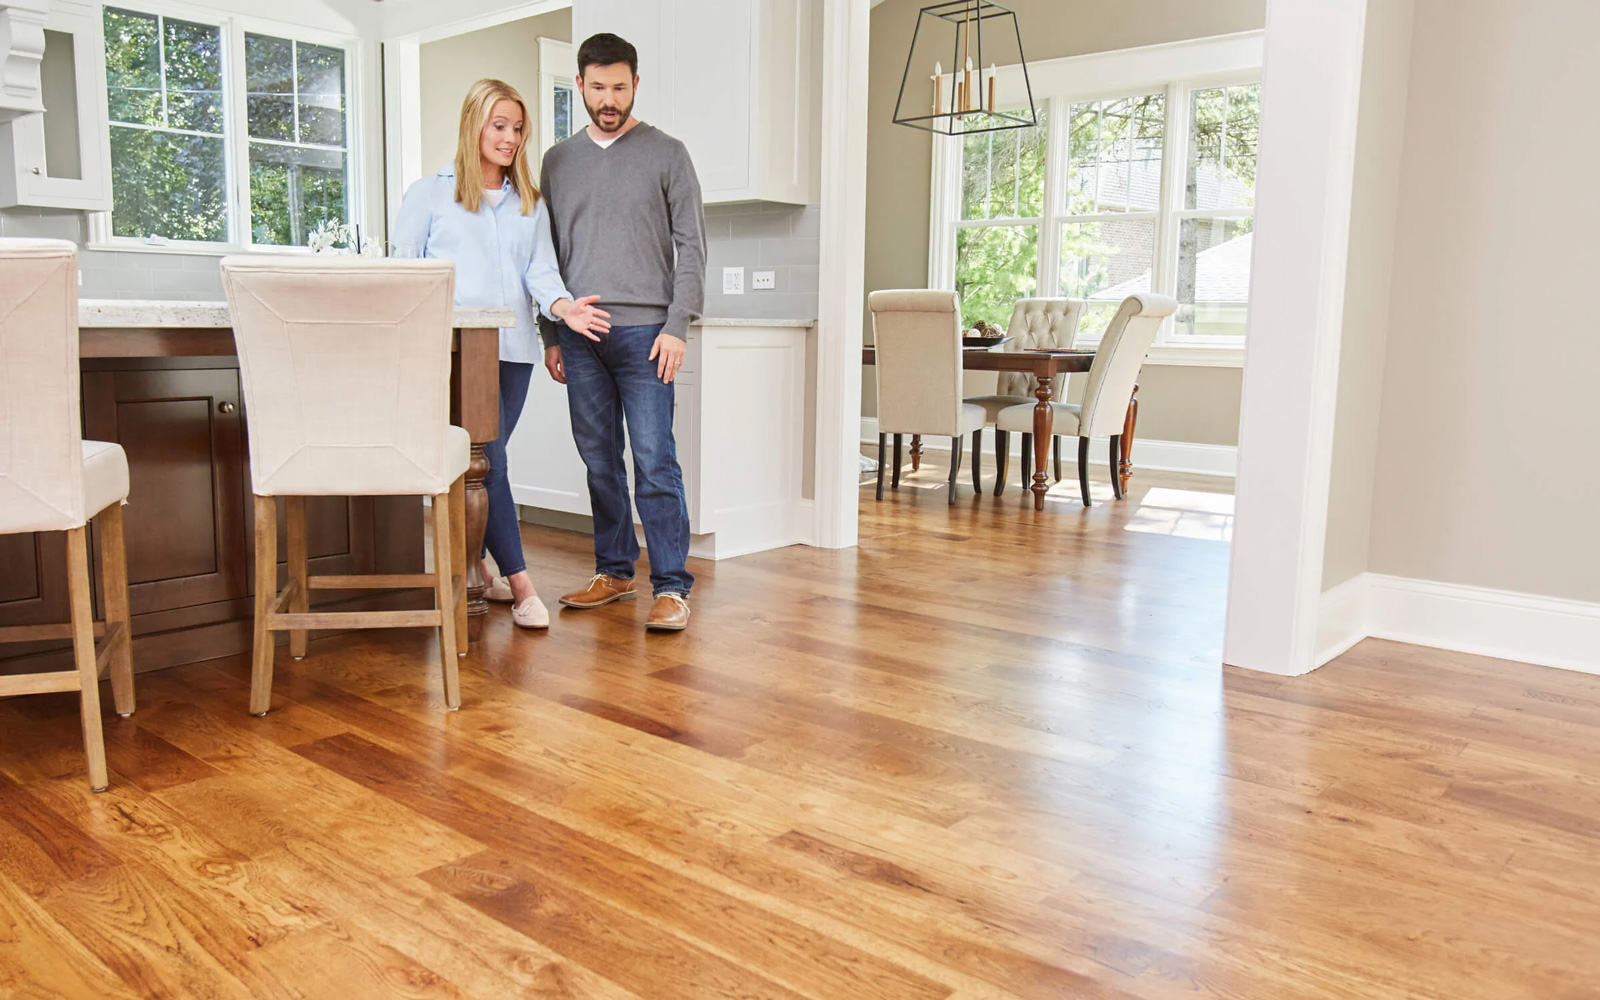 Couple admiring newly installed hardwood floors